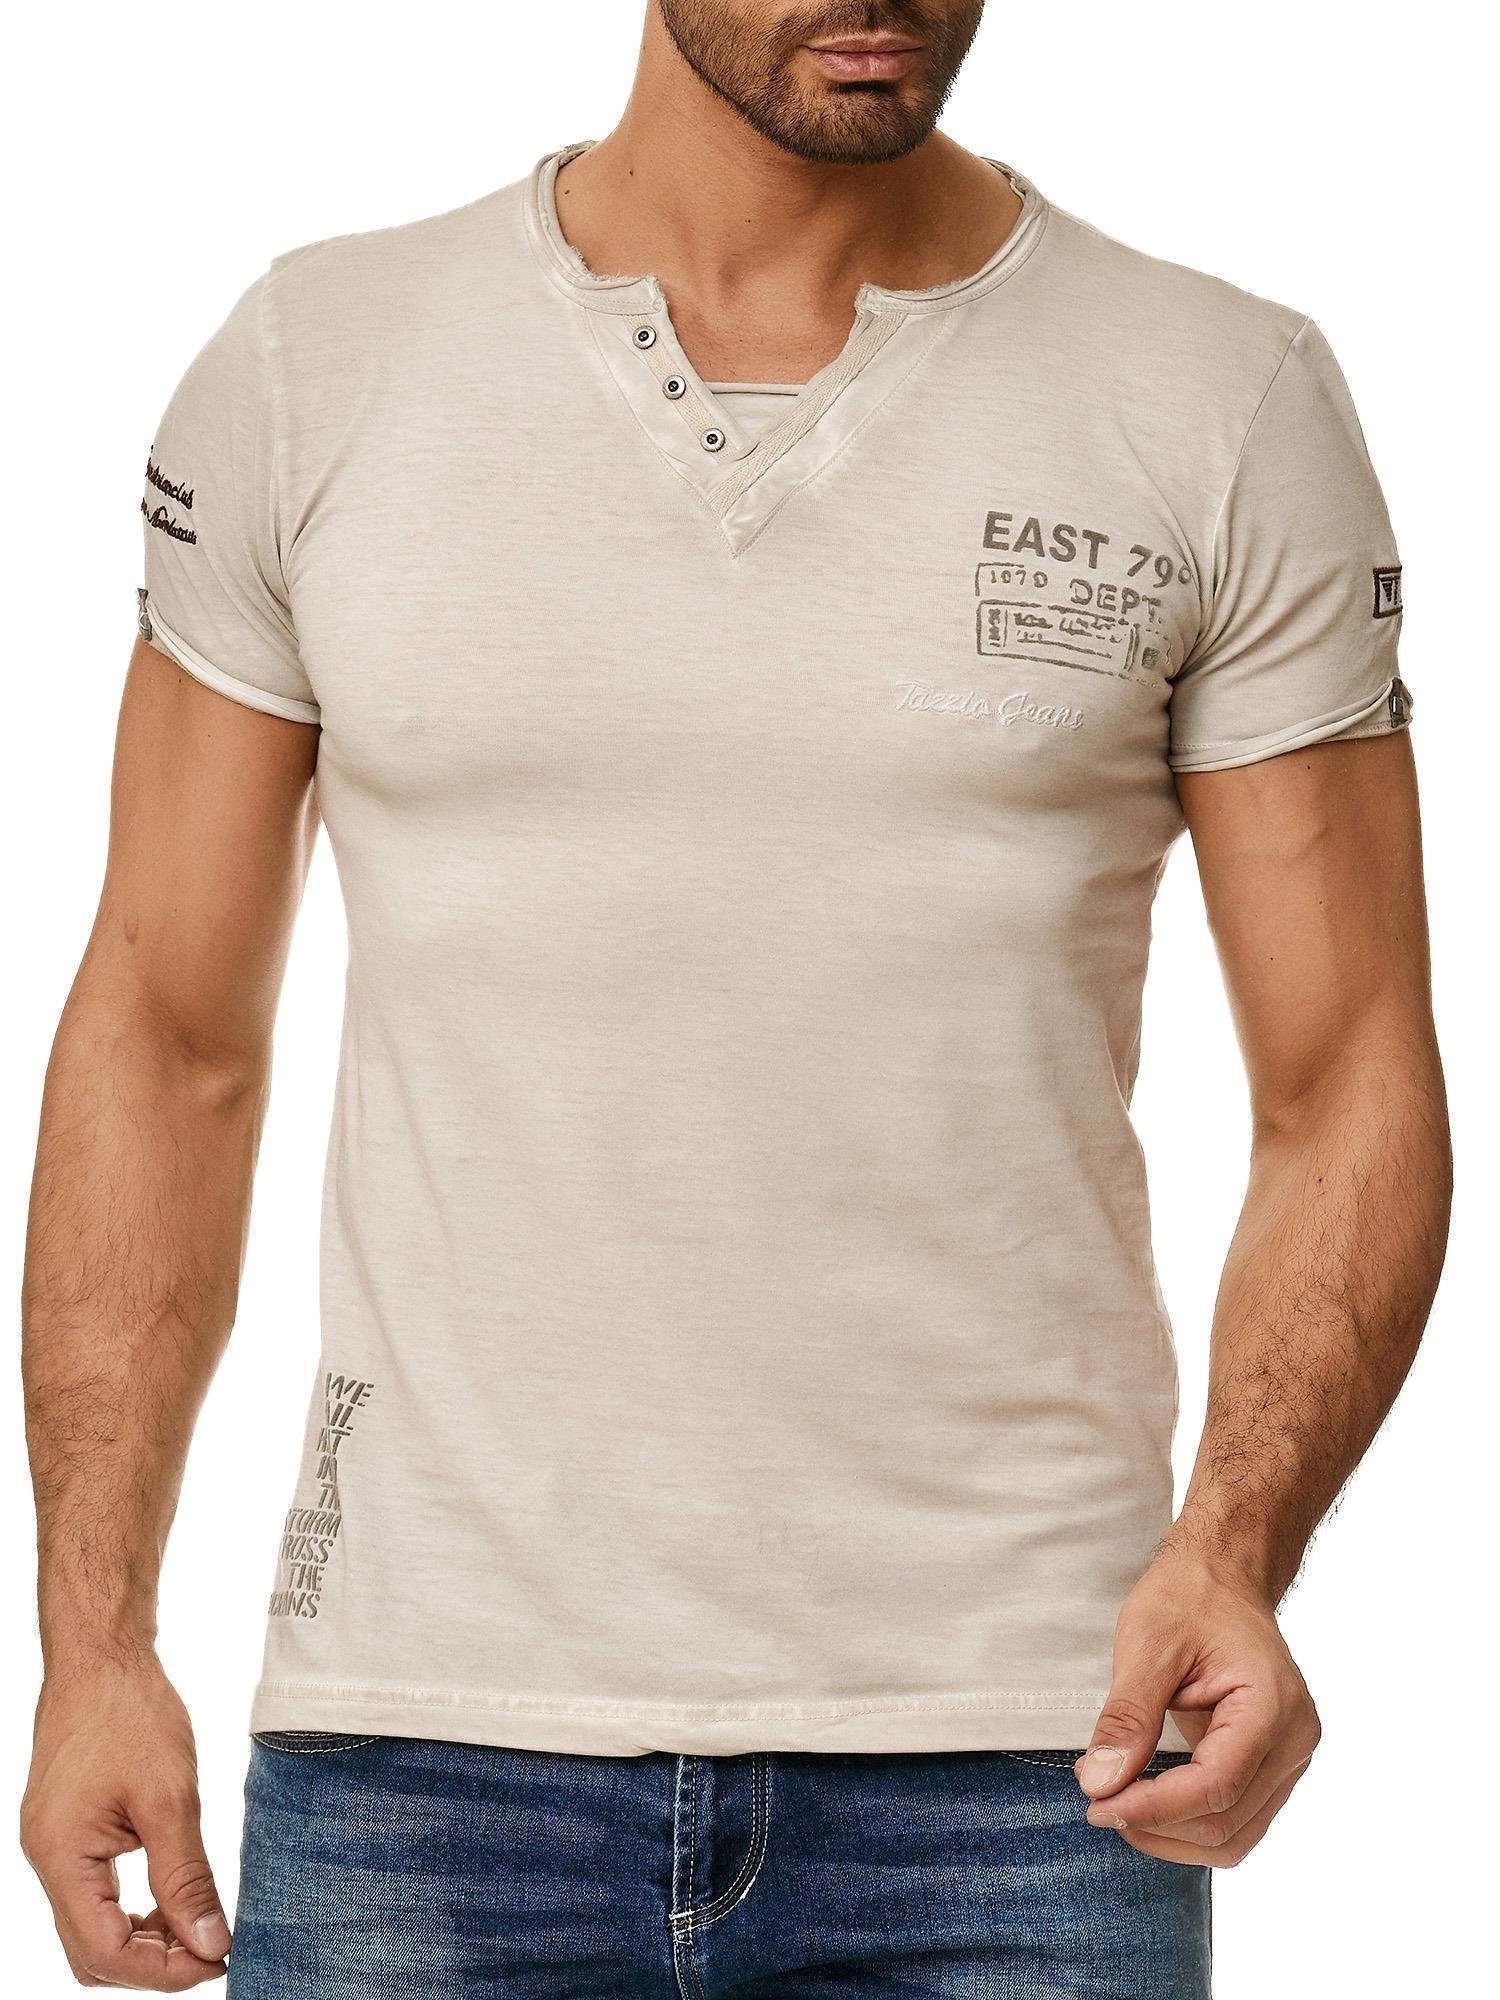 V-Shirt 4060 grau in Look außergewöhliches T-Shirt Used Tazzio Ölwaschung & dezentem